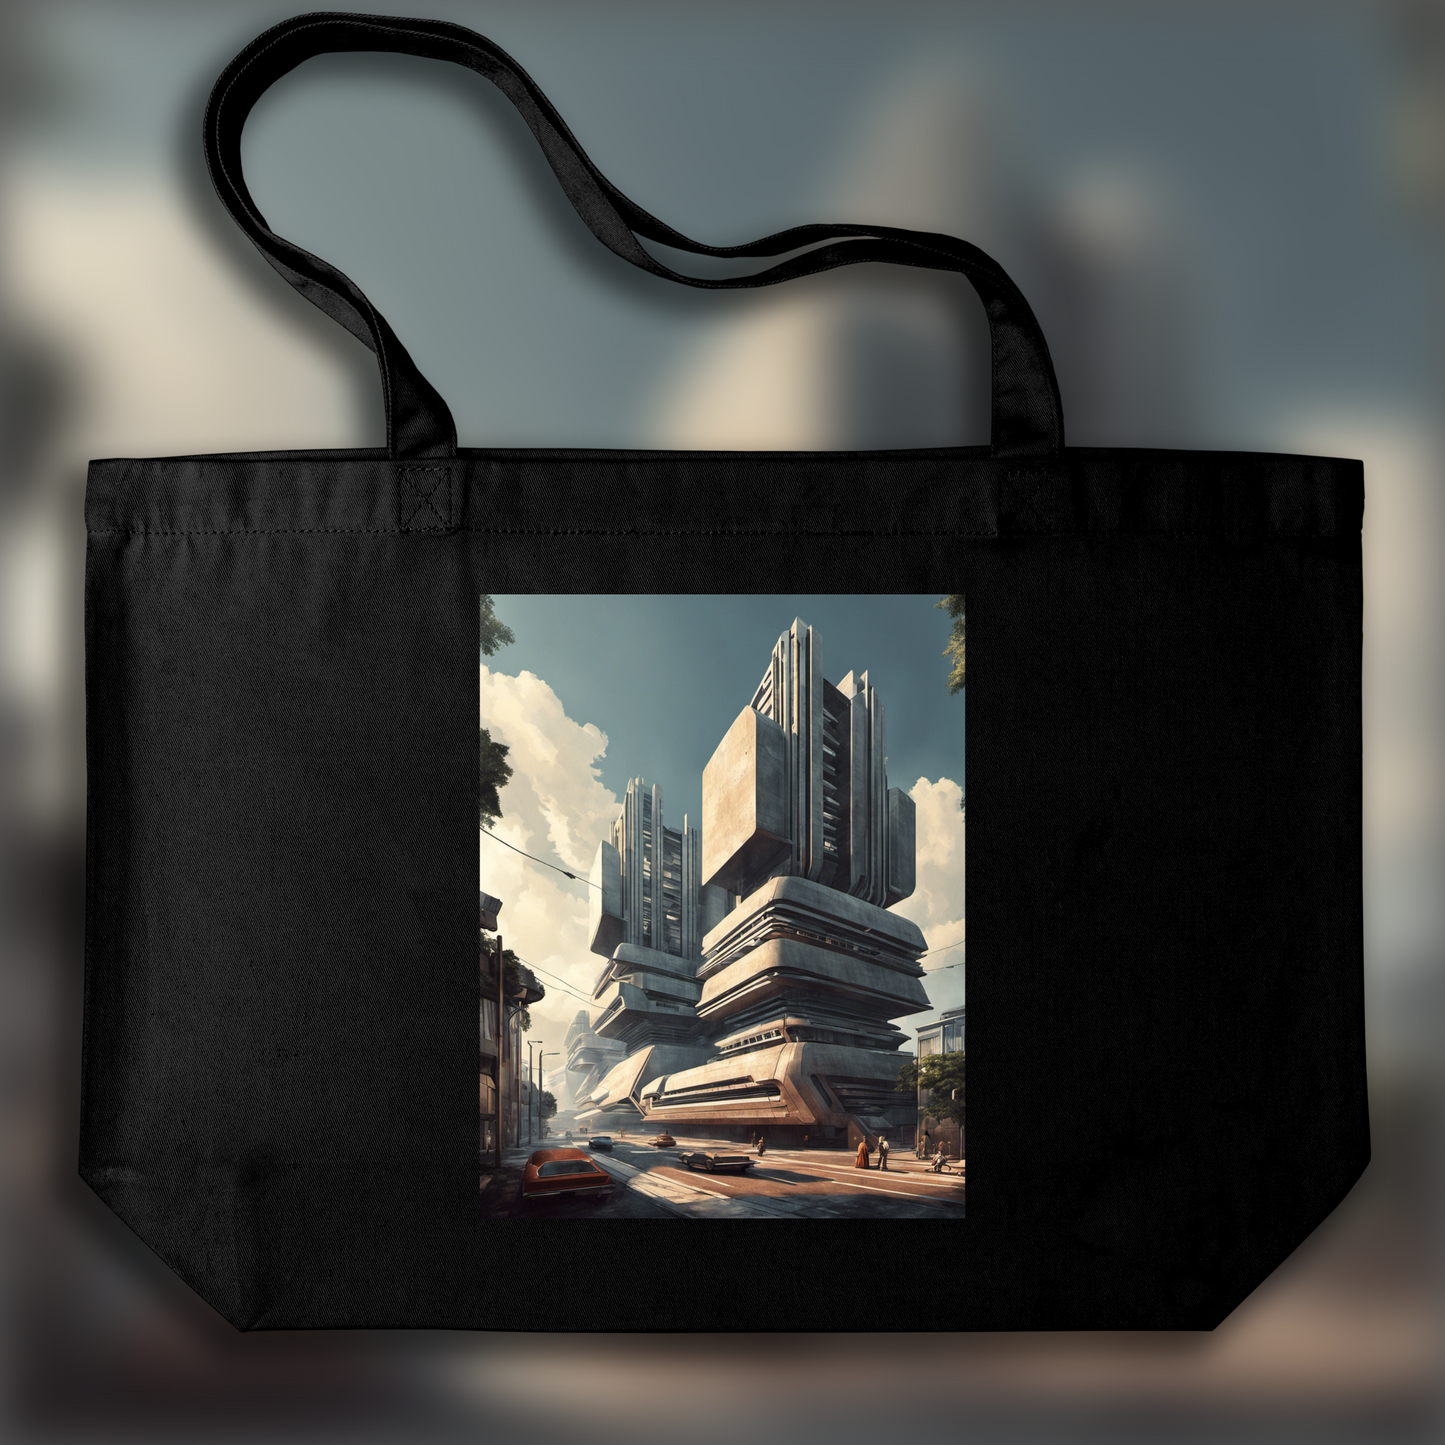 Tote bag ample - Retro future, Brutalist architecture, city - 2599149664